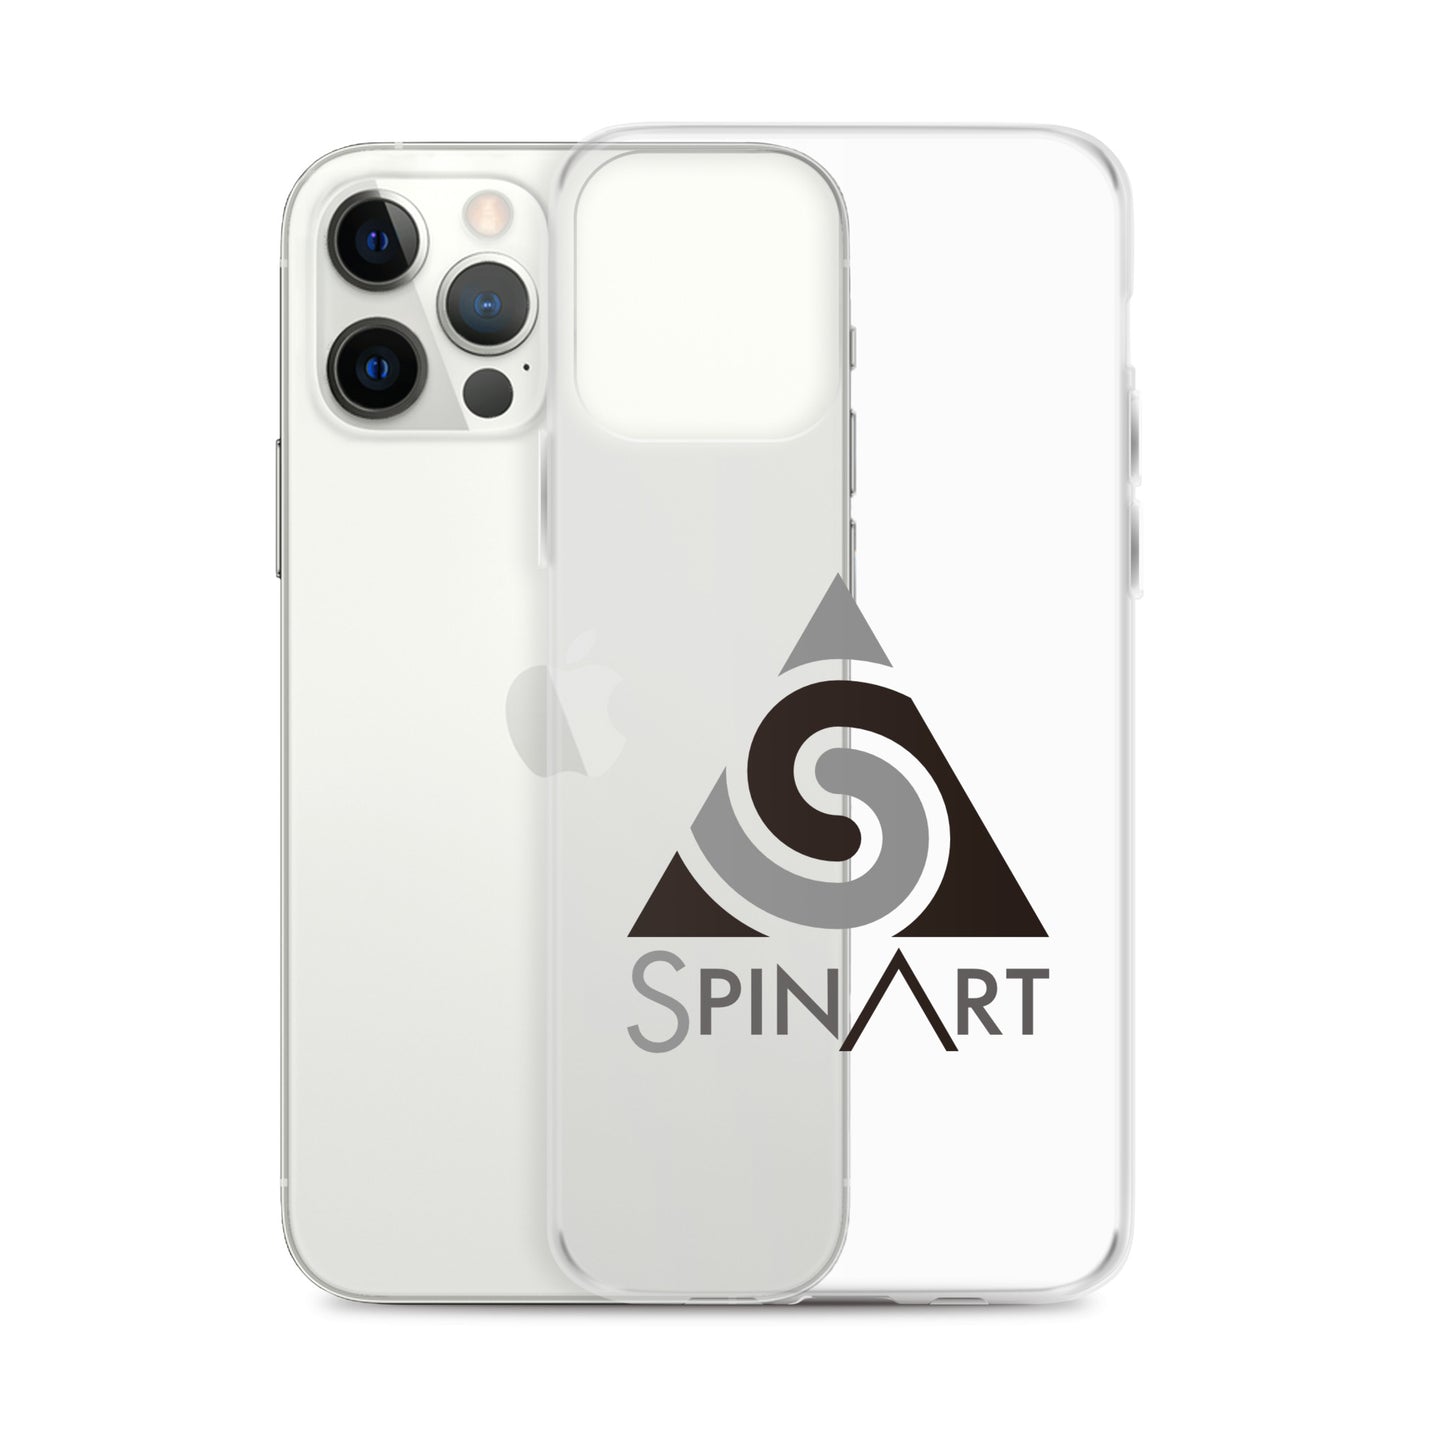 Spinart [iPhoneケース] モノDark